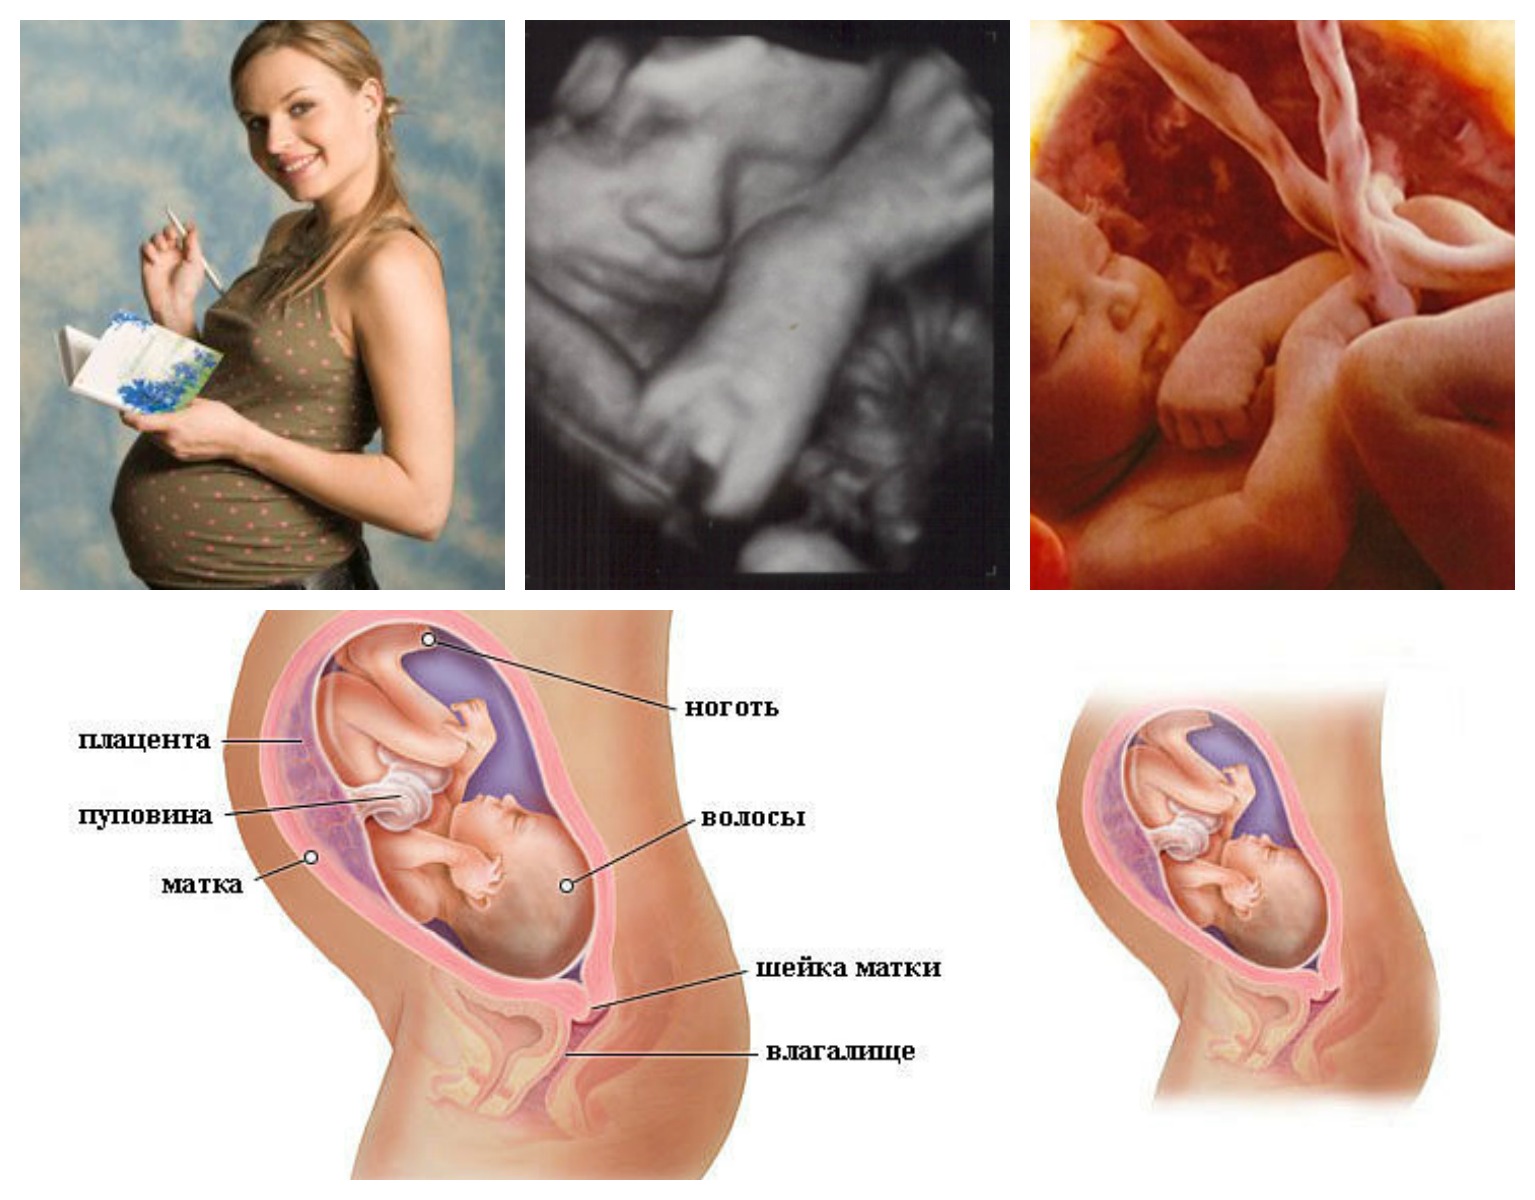 32 неделя беременности. календарь беременности   | материнство - беременность, роды, питание, воспитание